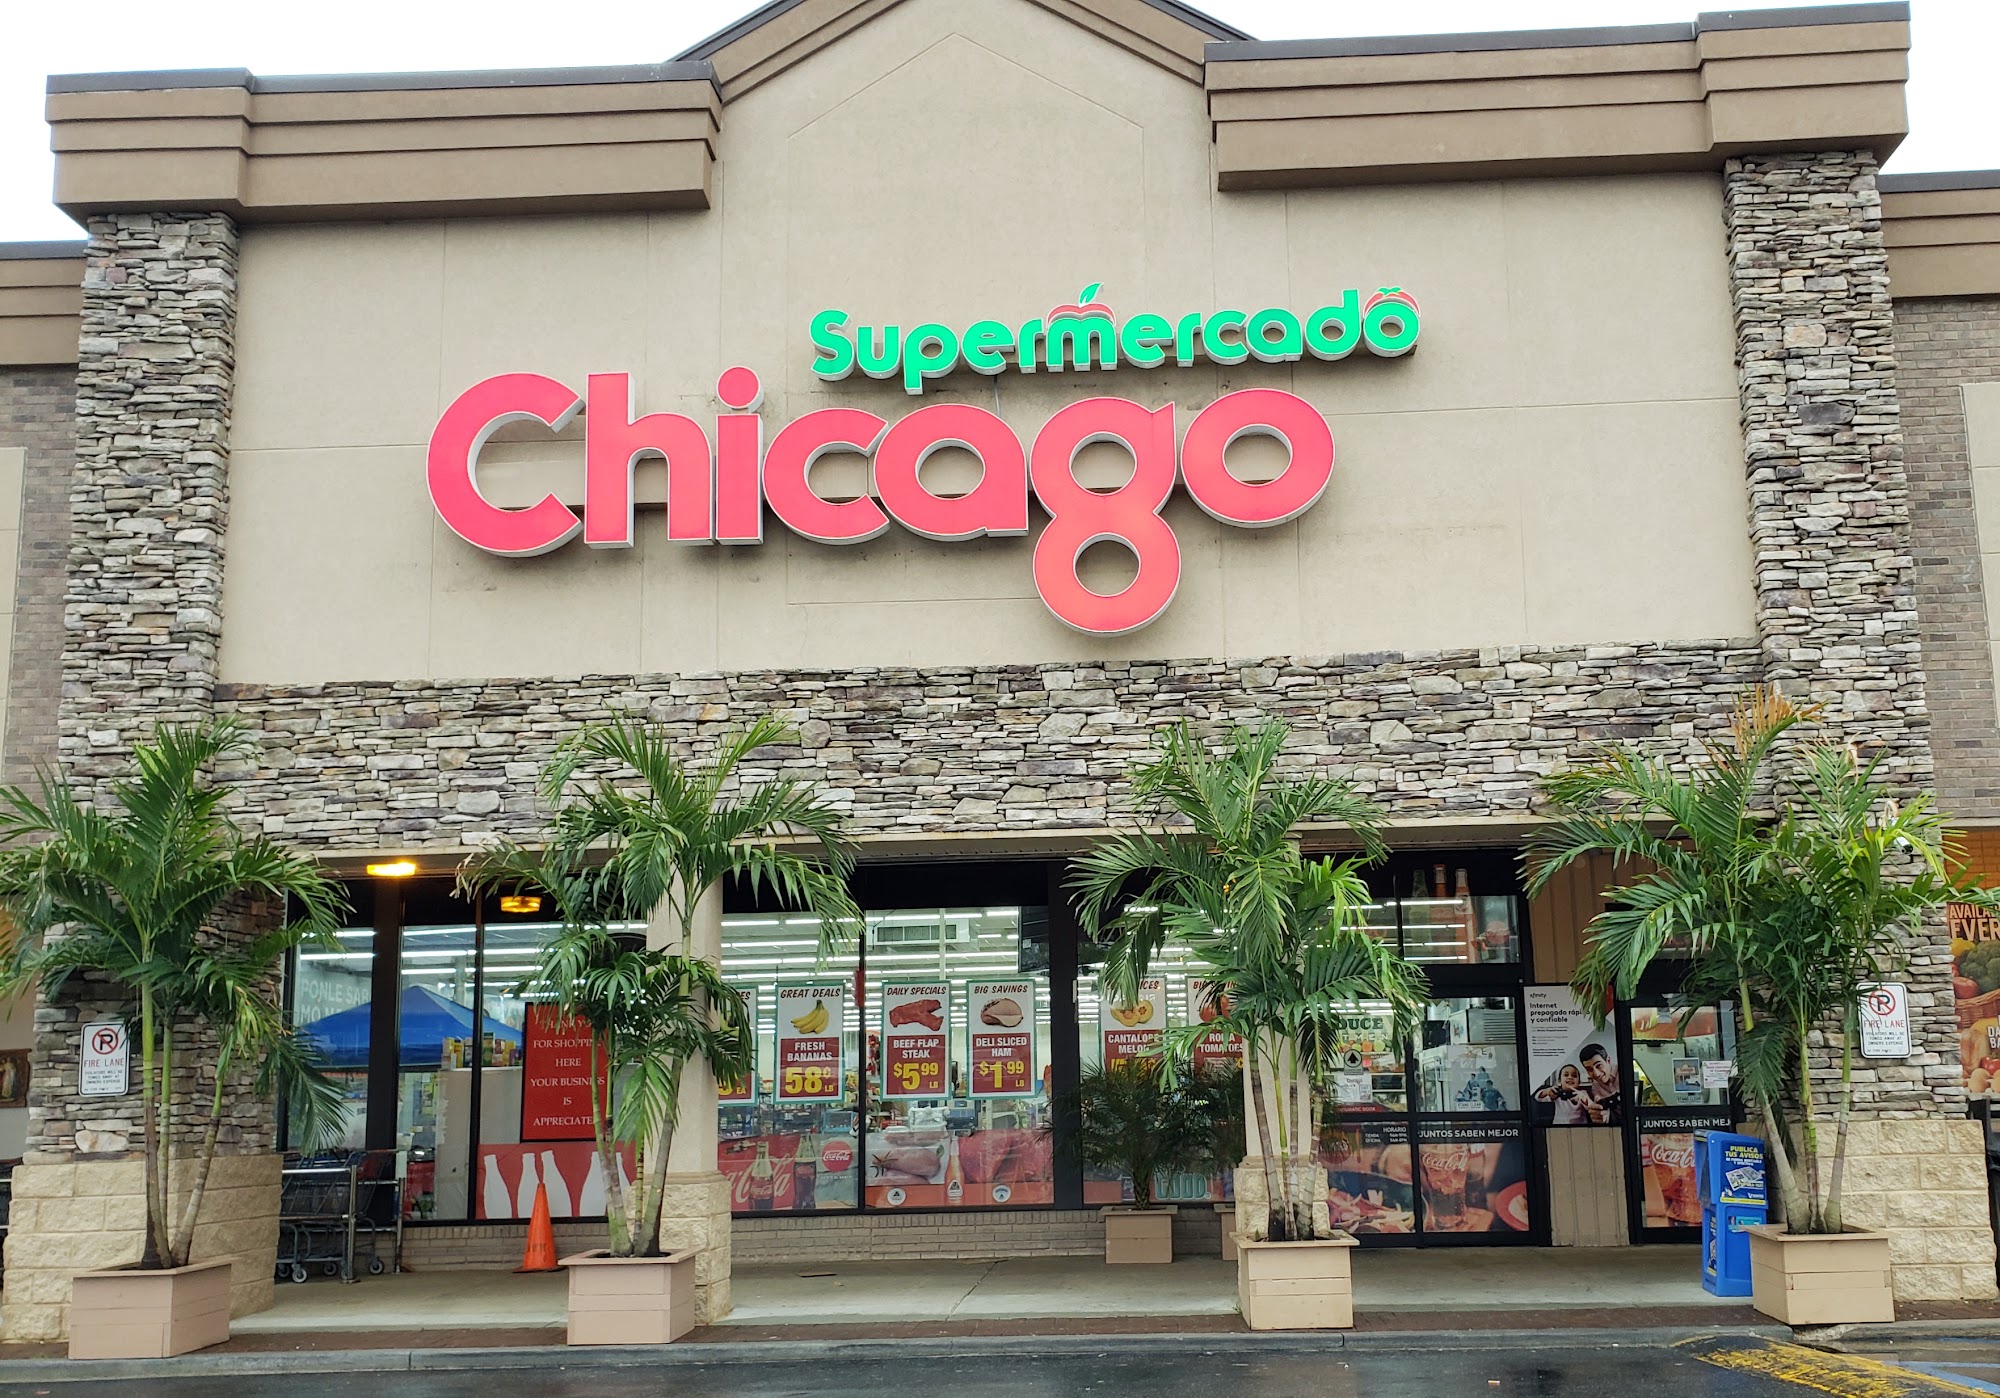 Supermercado Chicago